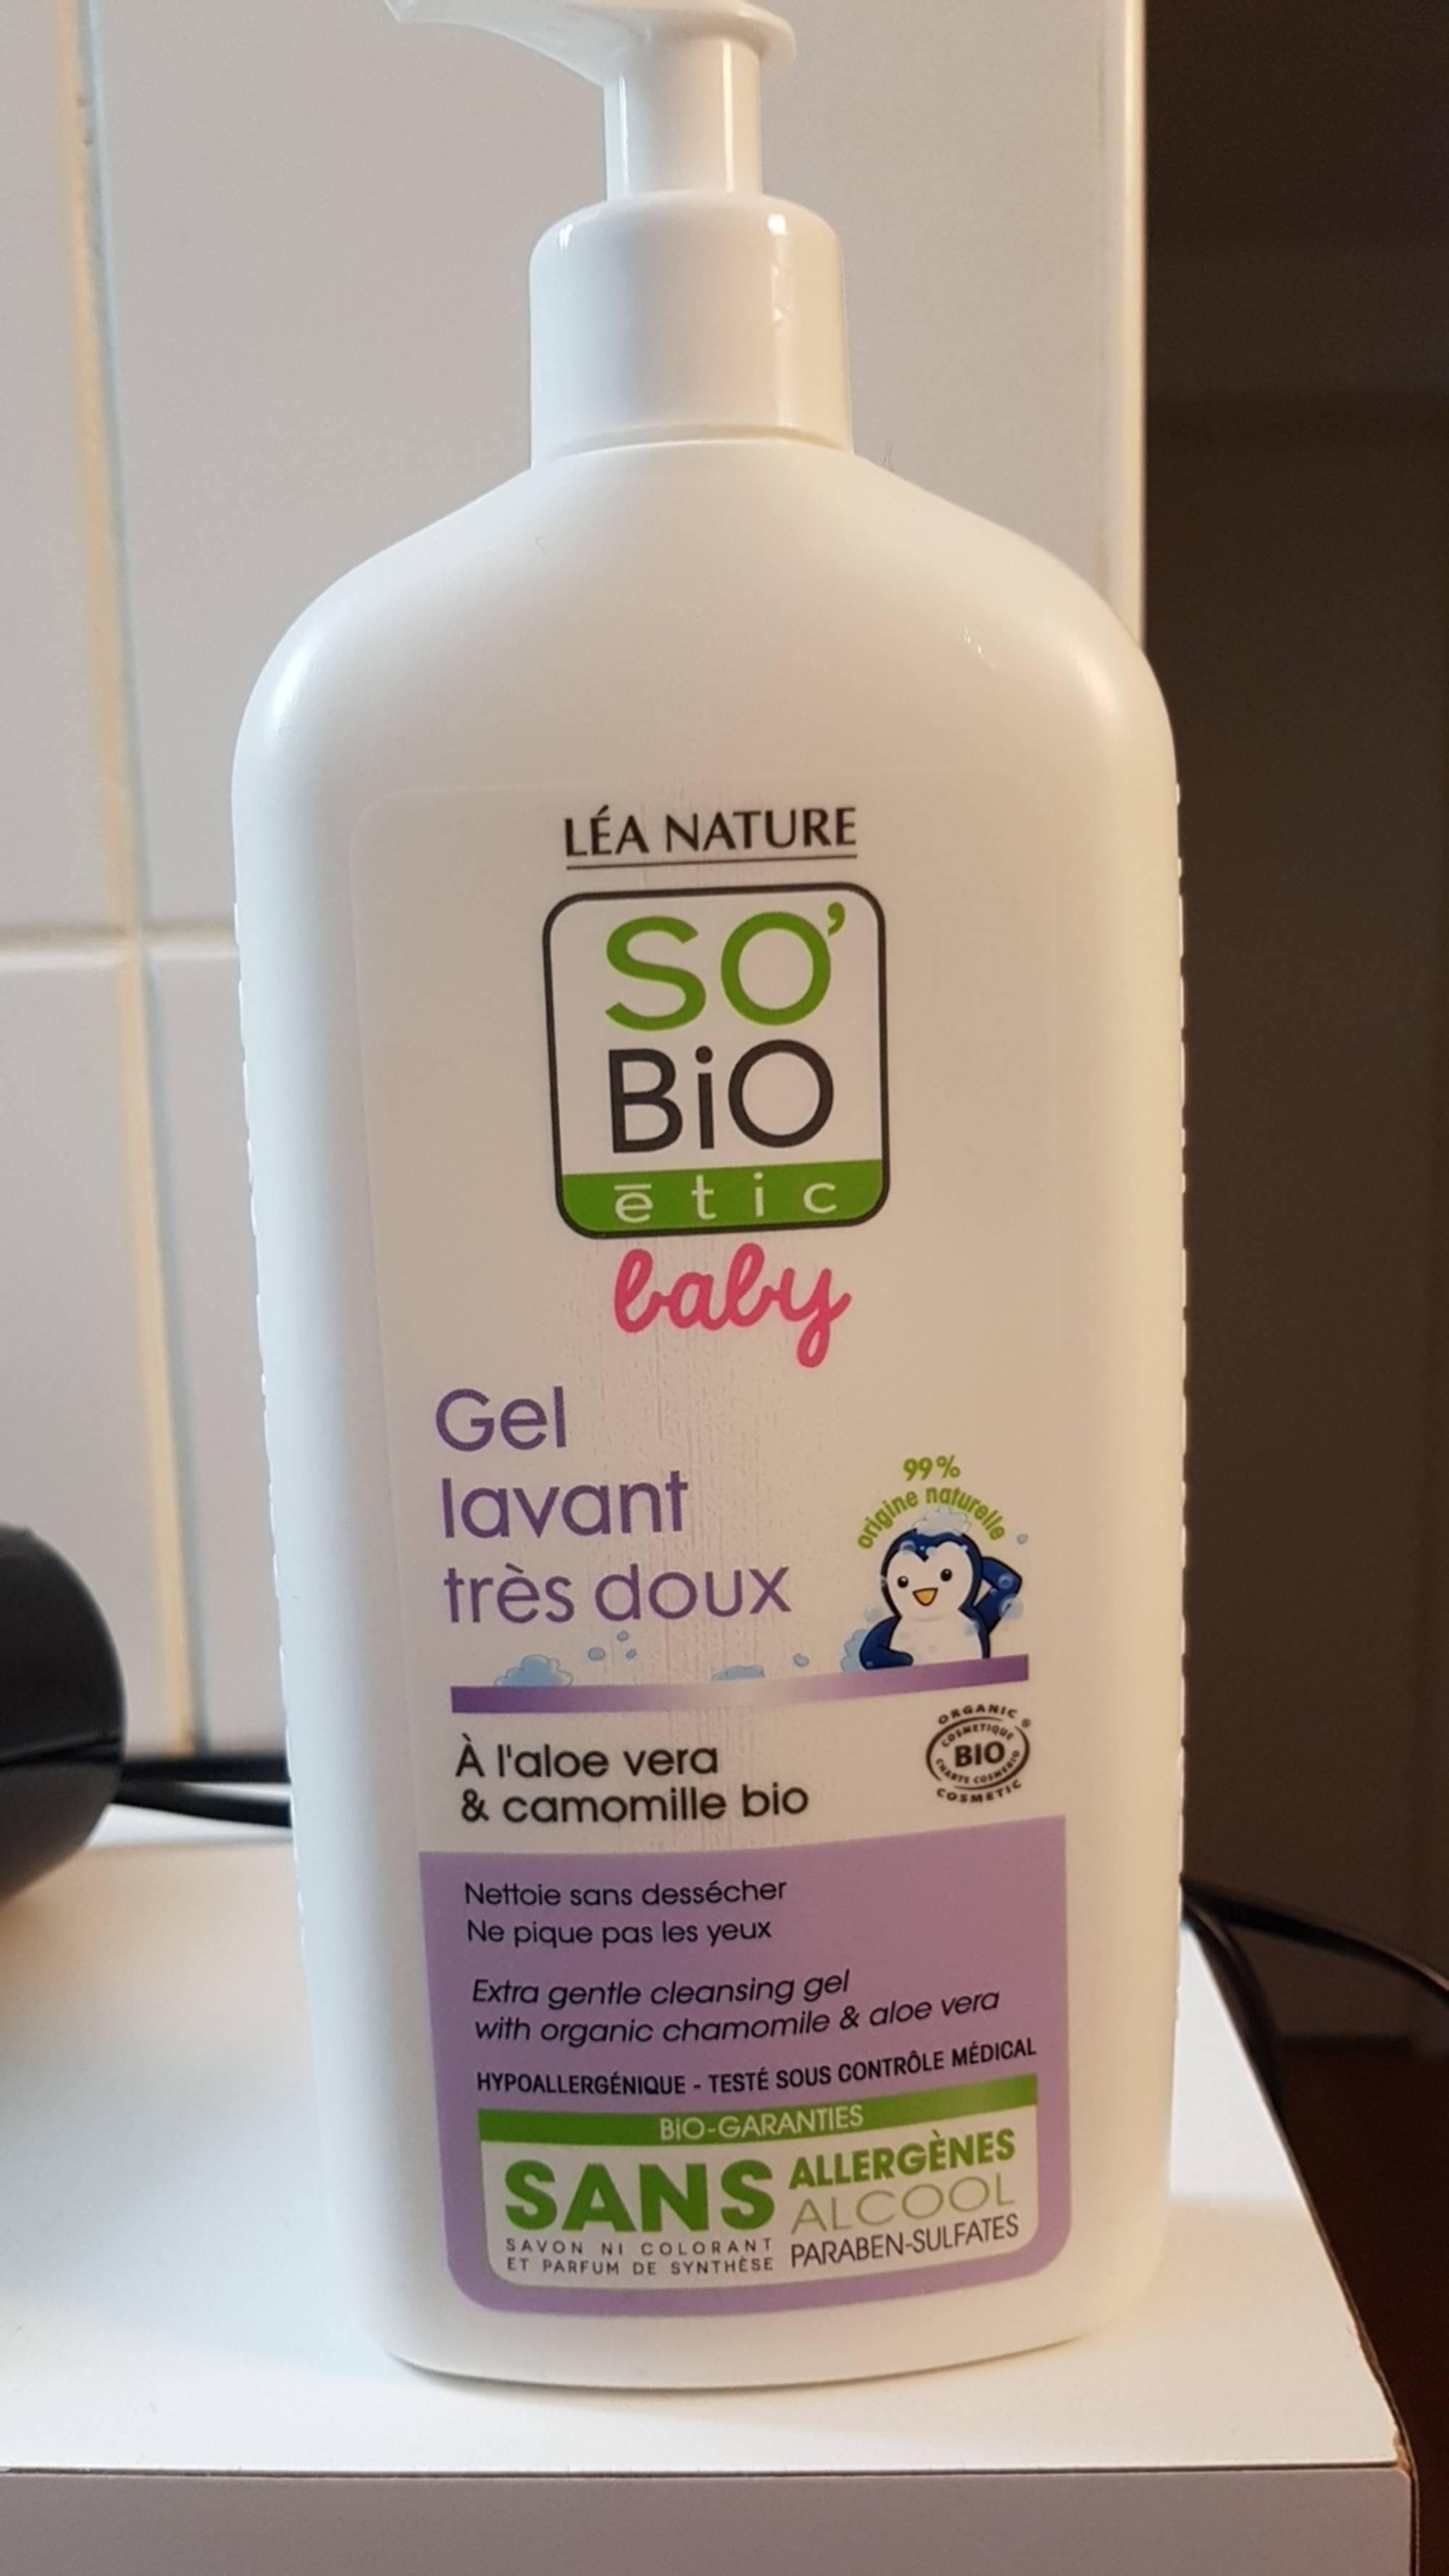 LÉA NATURE - So'Bio étic baby - Gel lavant très doux